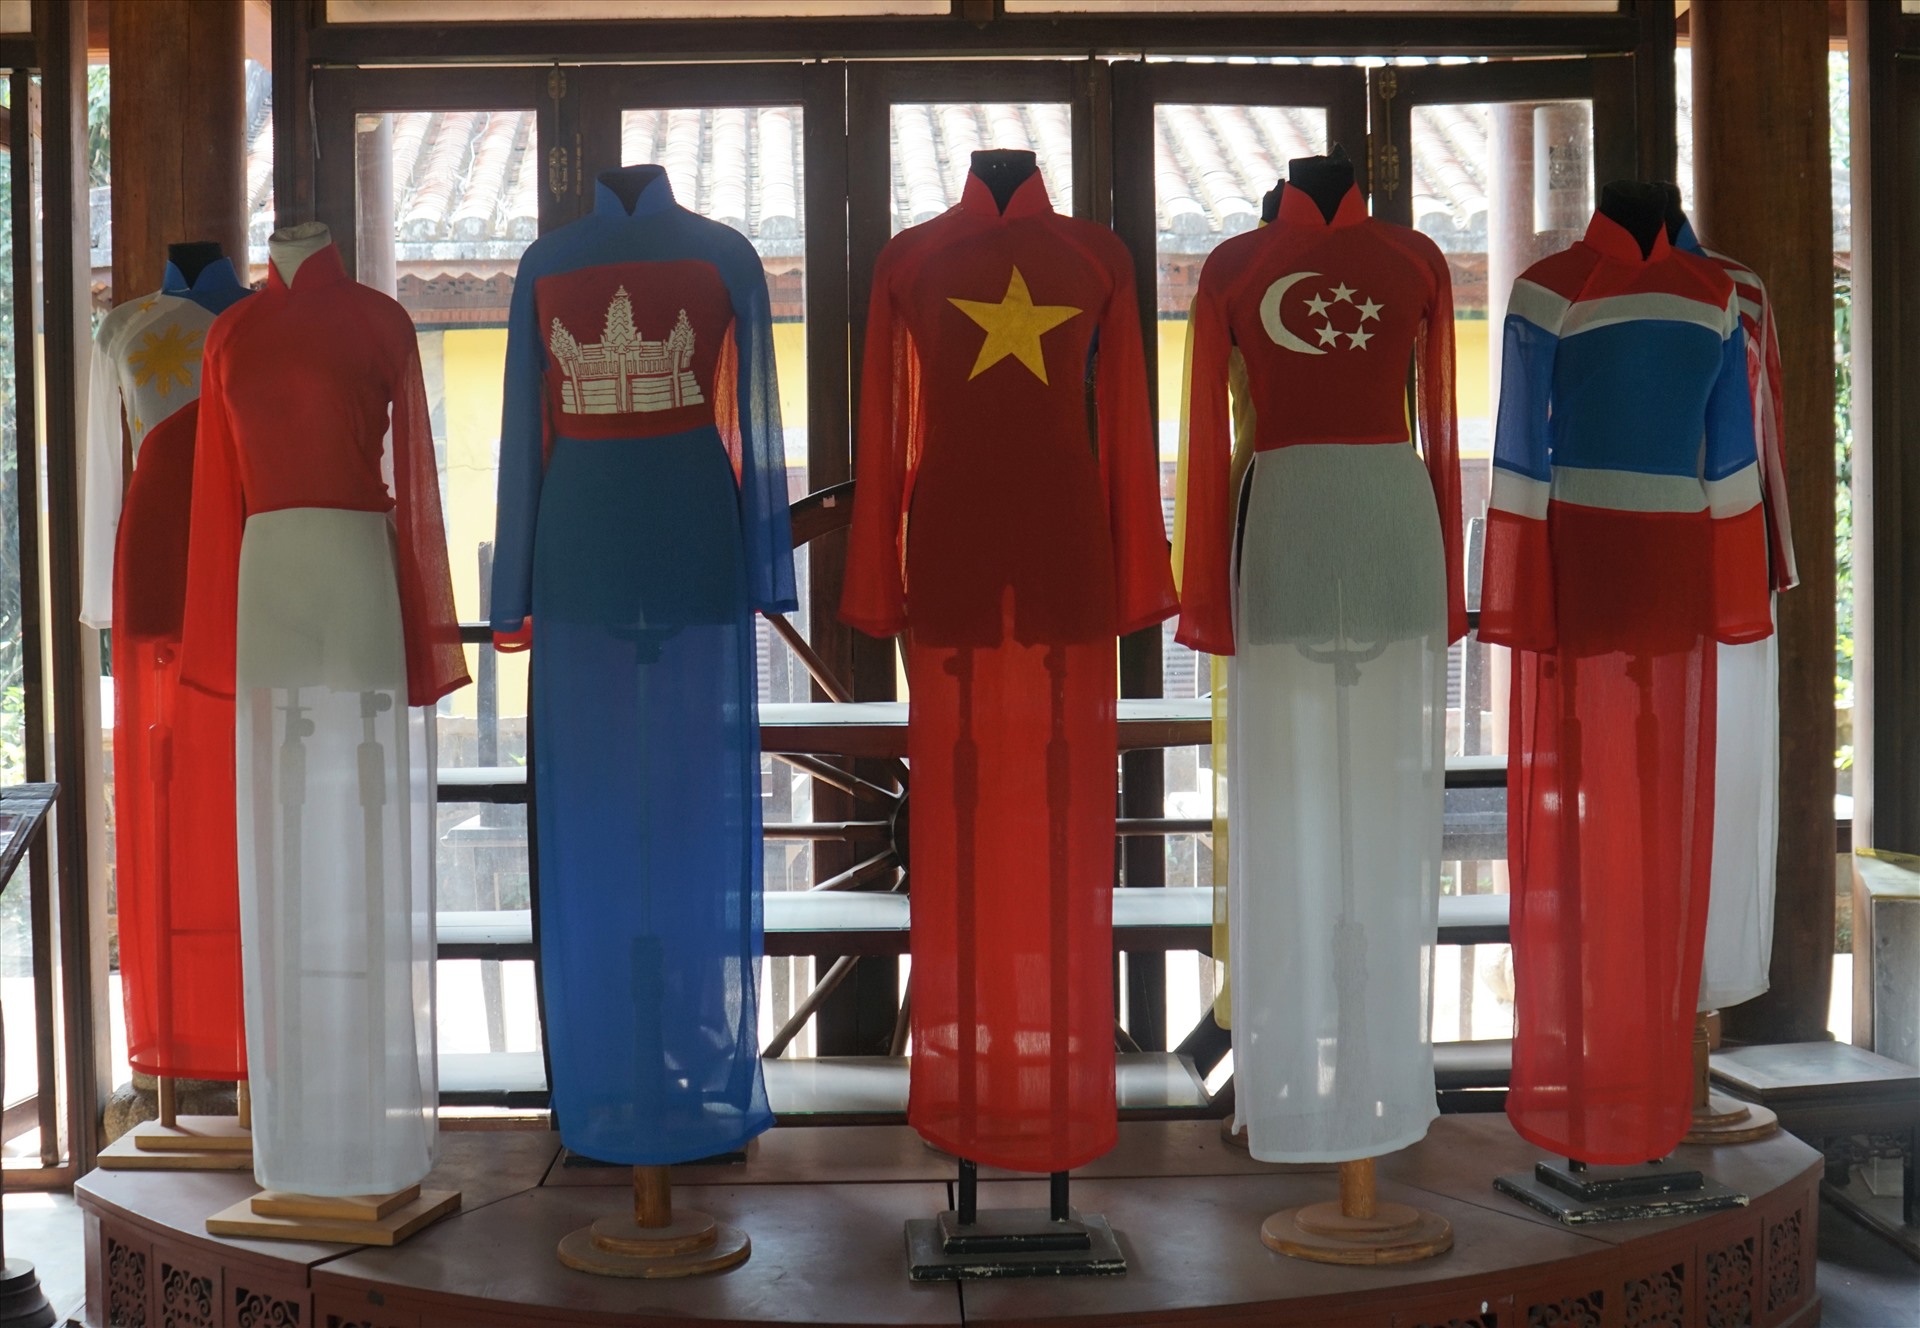 Giữa nhịp sống hối hả ở Sài Gòn, có một nơi lưu giữ bản sắc dân tộc Việt Nam qua tà áo dài. Nơi đây chính là Bảo tàng áo dài Việt Nam, tọa lạc trên cù lao Phường Long Phước, Quận 9, TPHCM với hệ sinh thái sạch và xanh đặc trưng của vùng sông nước Nam Bộ.